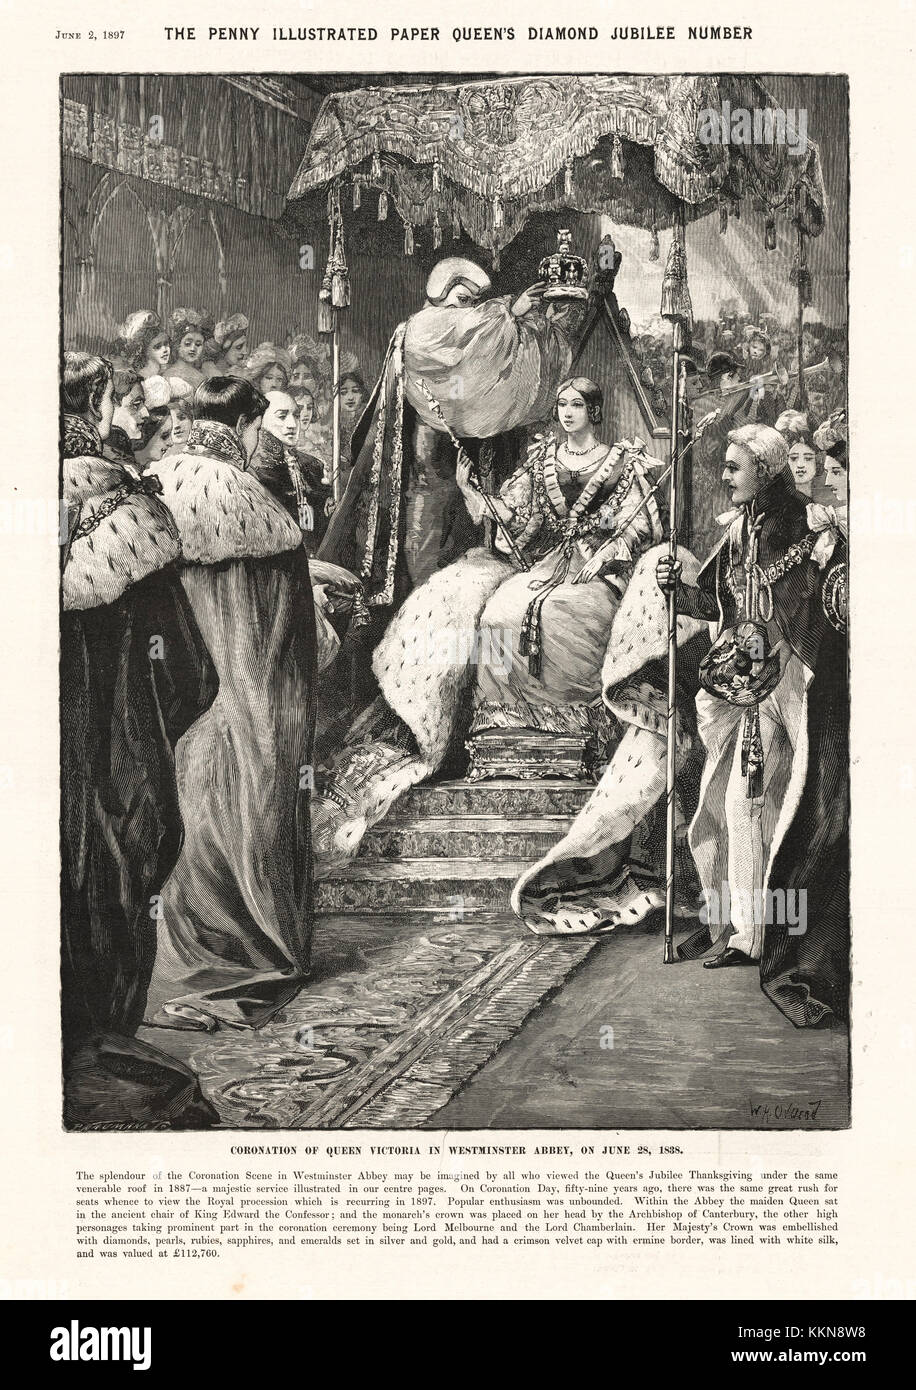 1897 Penny Carta illustrato incoronazione della Regina Victoria in 1838 Foto Stock